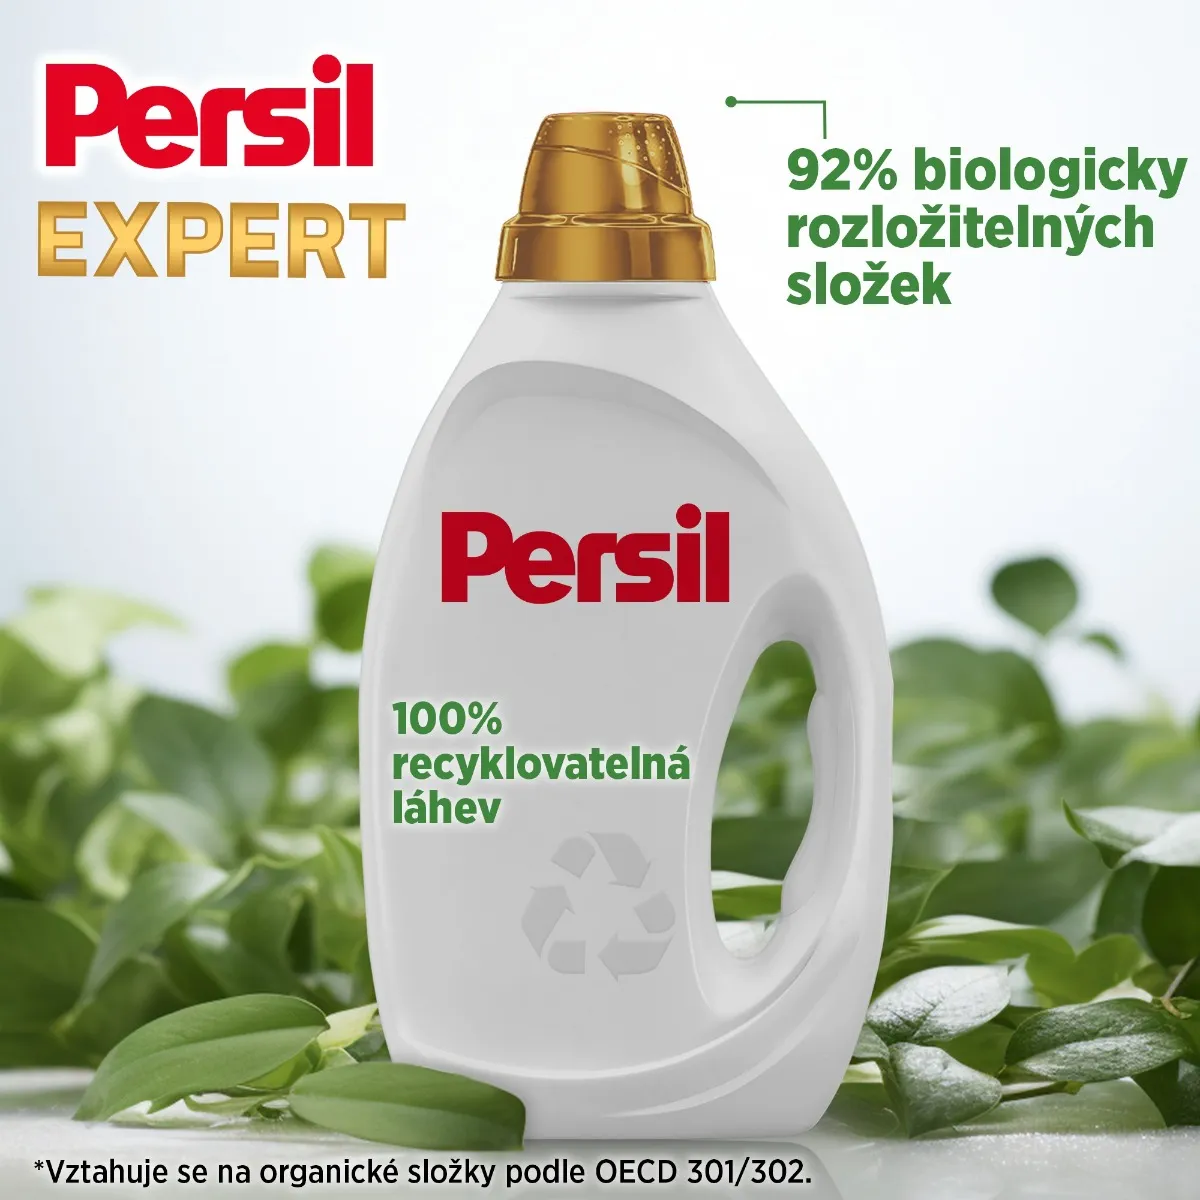 Persil Prací gel Expert Sensitive 40 dávek